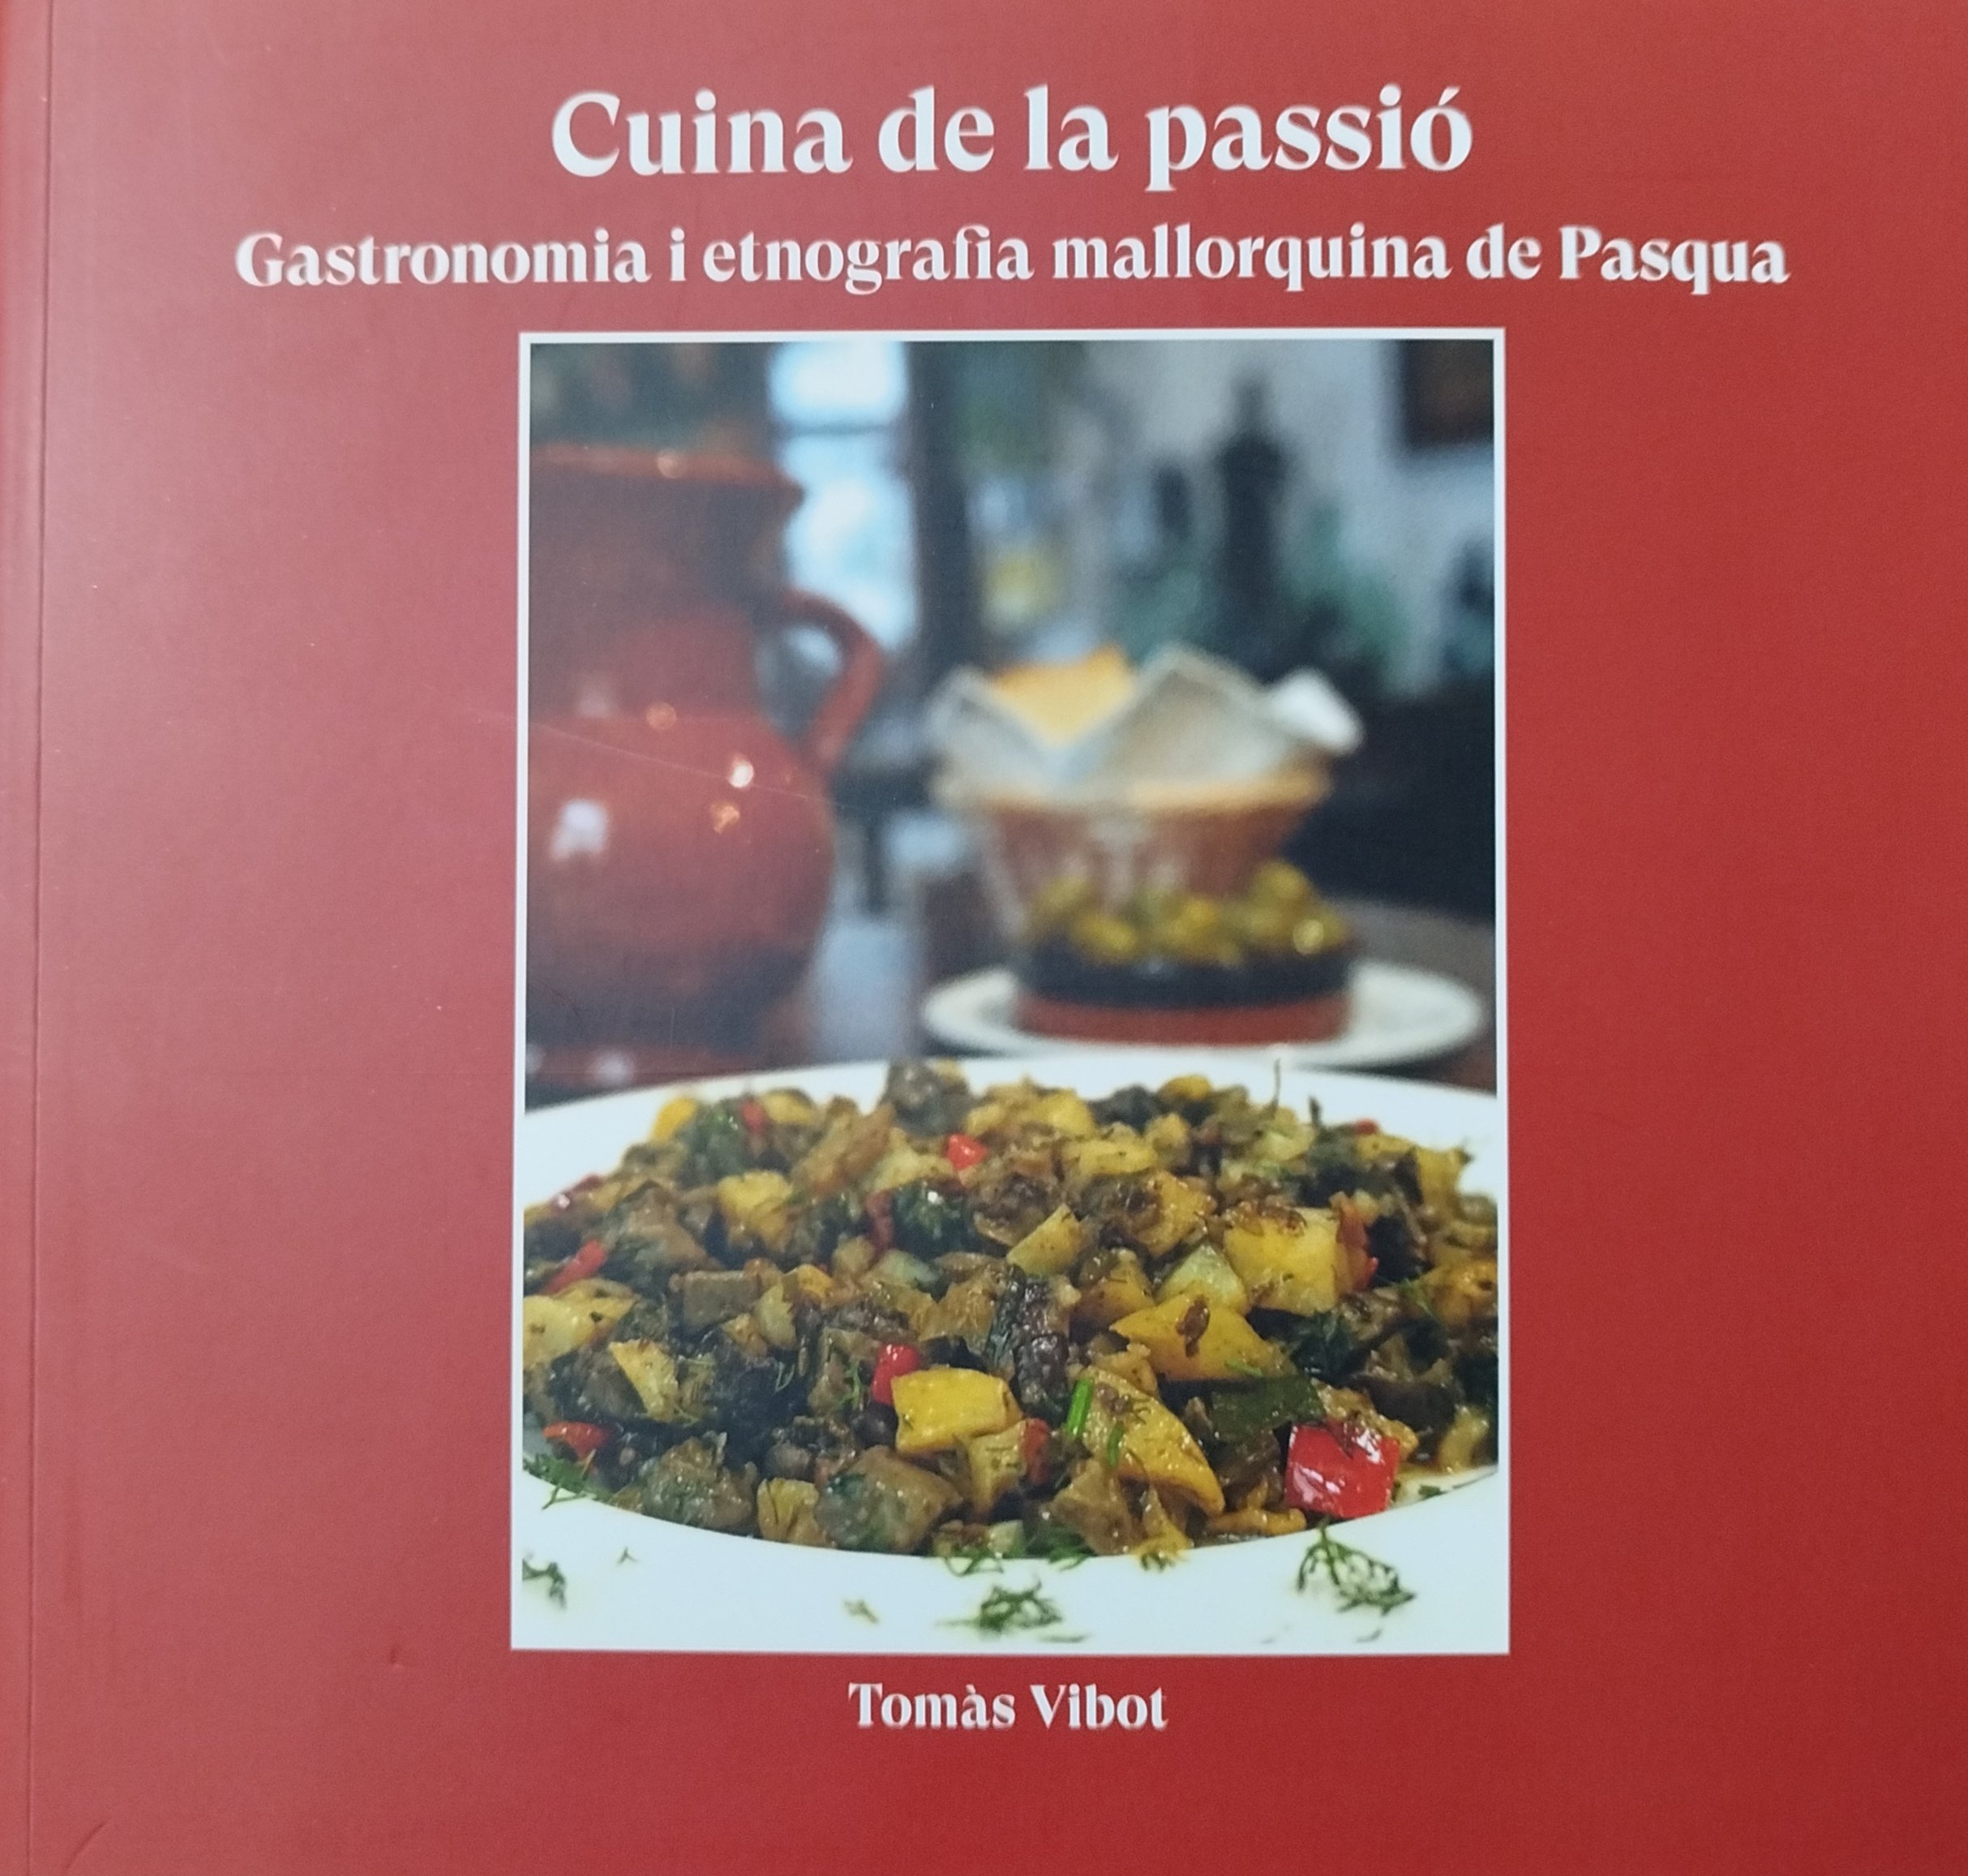 CUINA DE LA PASSIÓ. Gastronomia i etnografia mallorquina de Pasqua